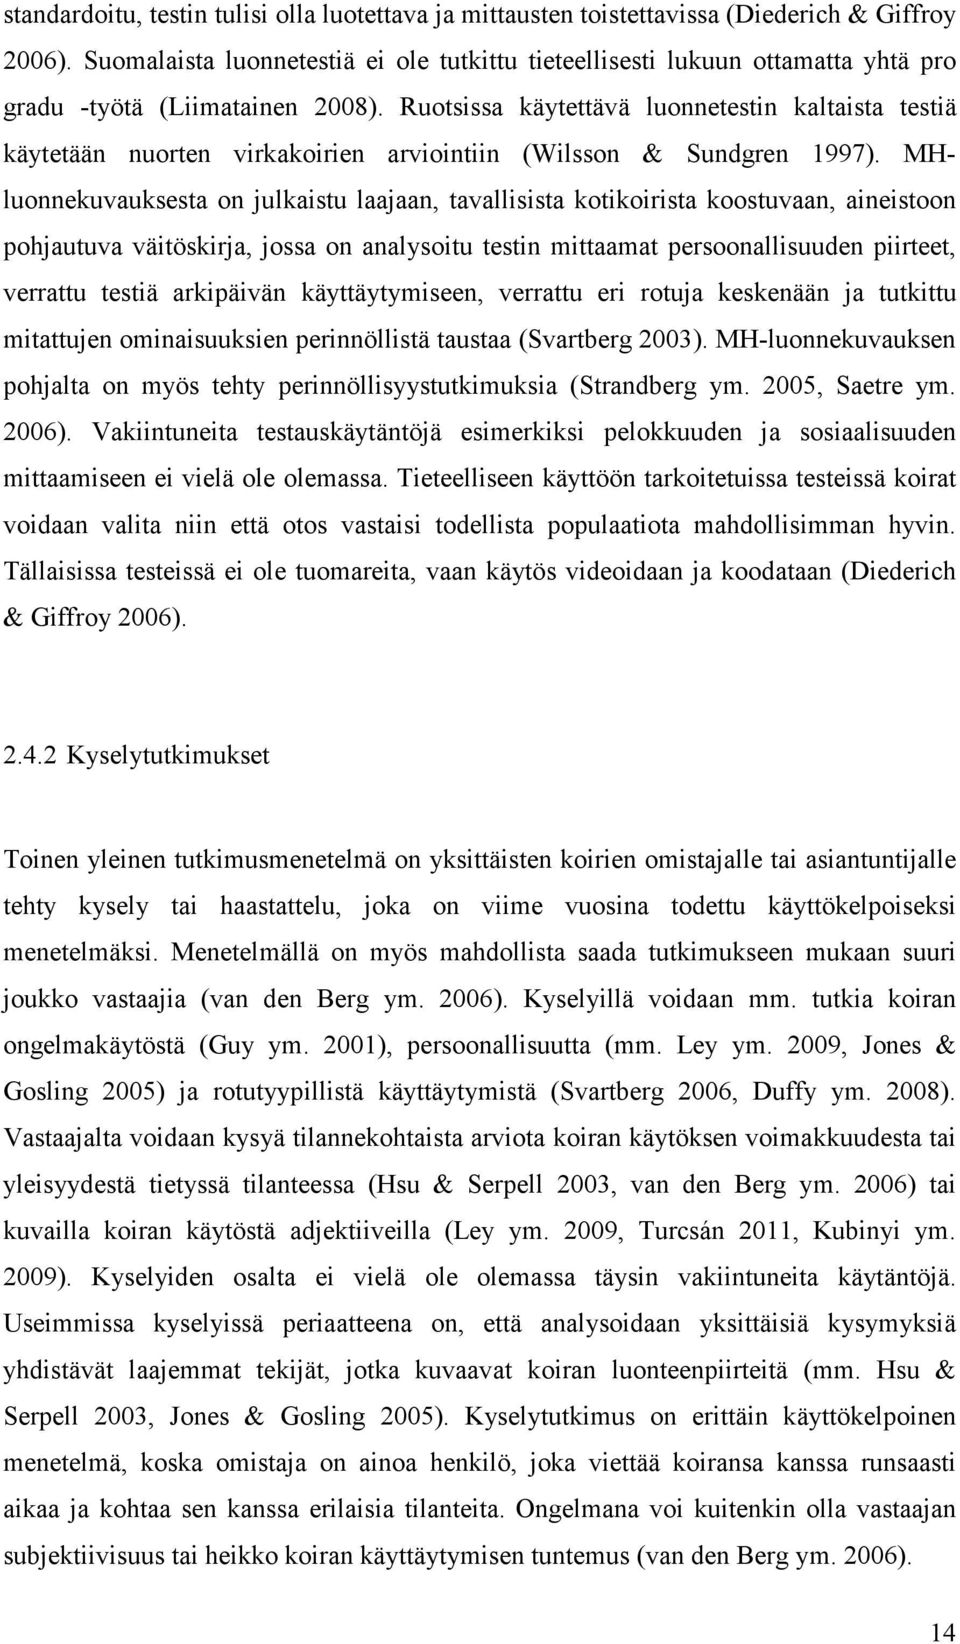 Ruotsissa käytettävä luonnetestin kaltaista testiä käytetään nuorten virkakoirien arviointiin (Wilsson & Sundgren 1997).